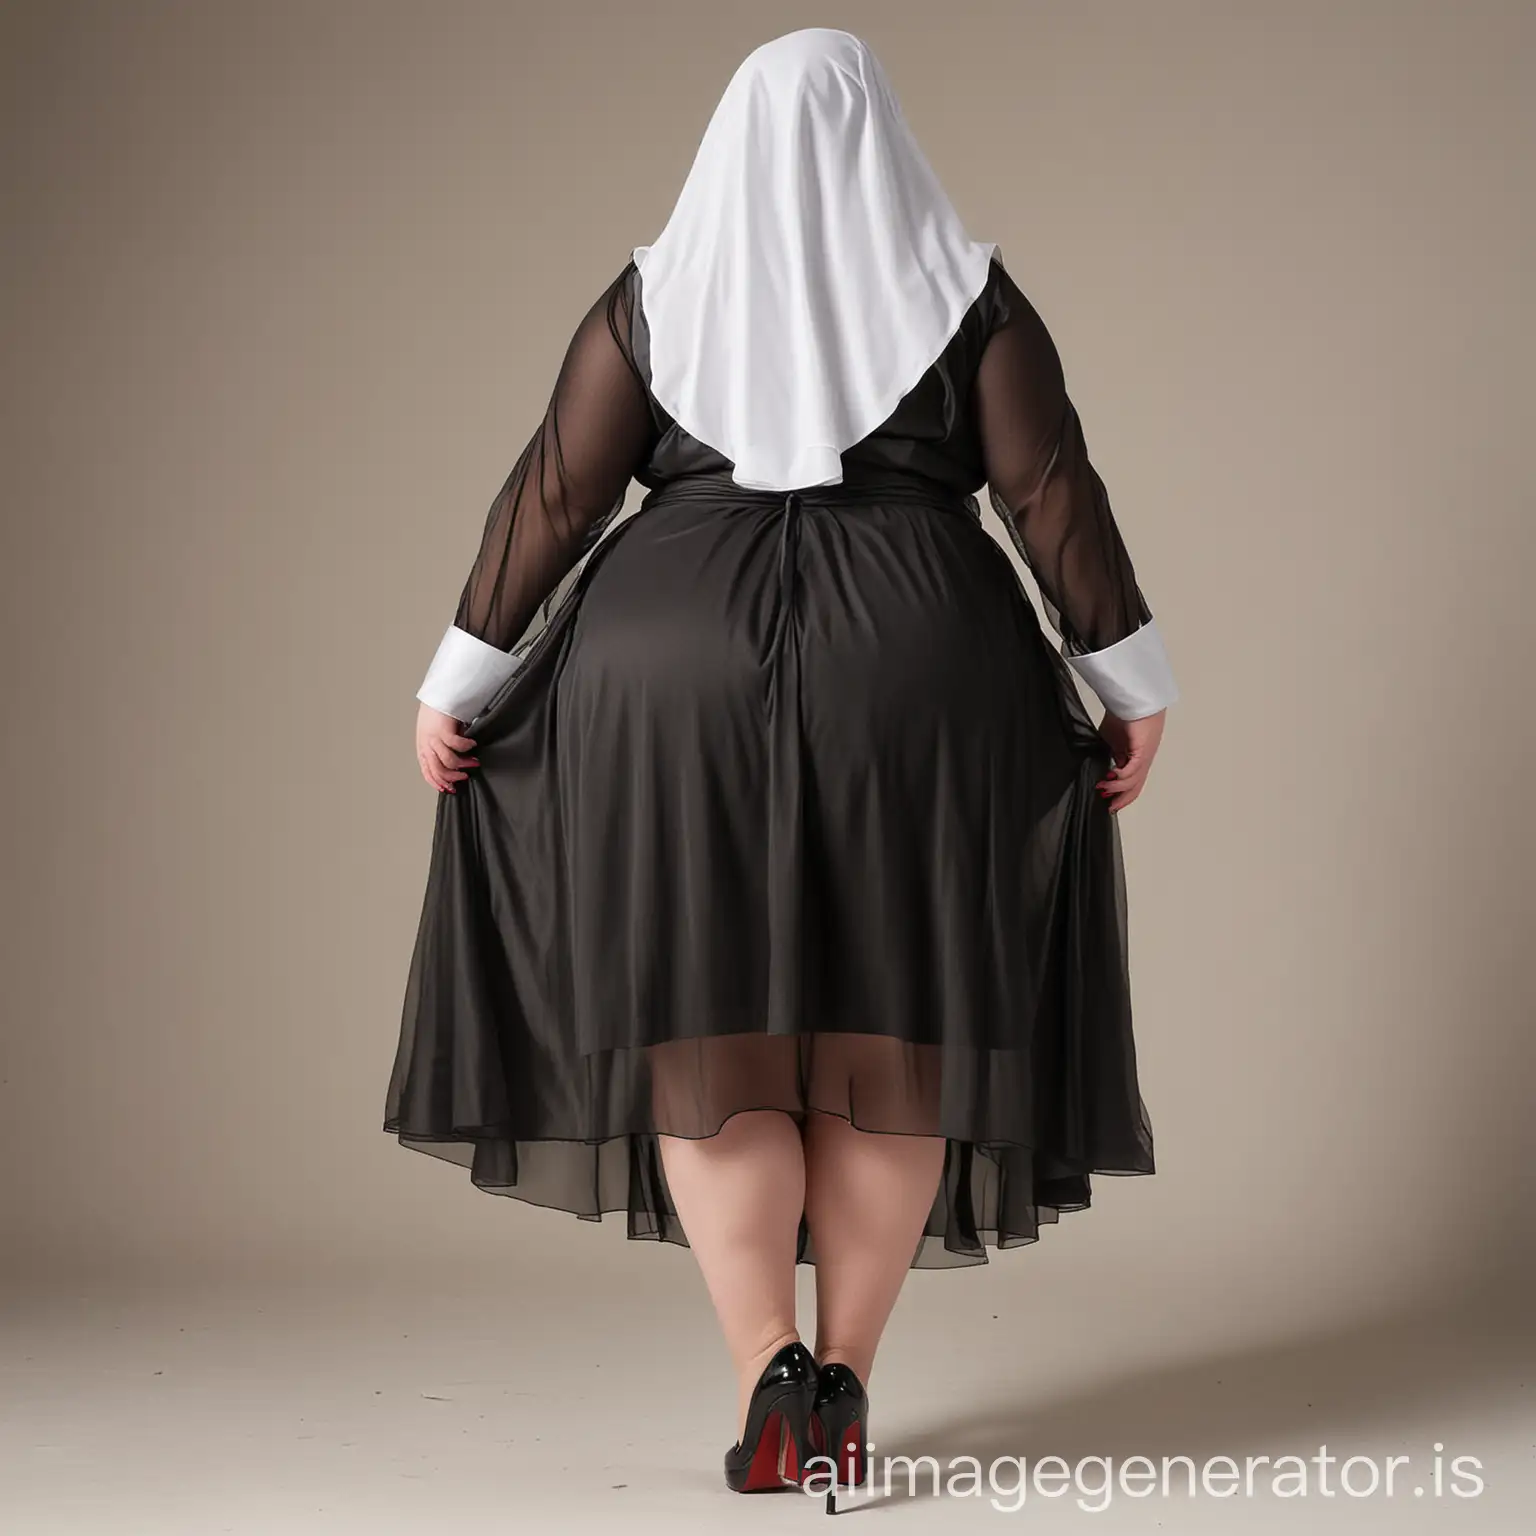 SSBBW, full body, high heels, back view, nun, sheer dress, weight 1,300 pounds